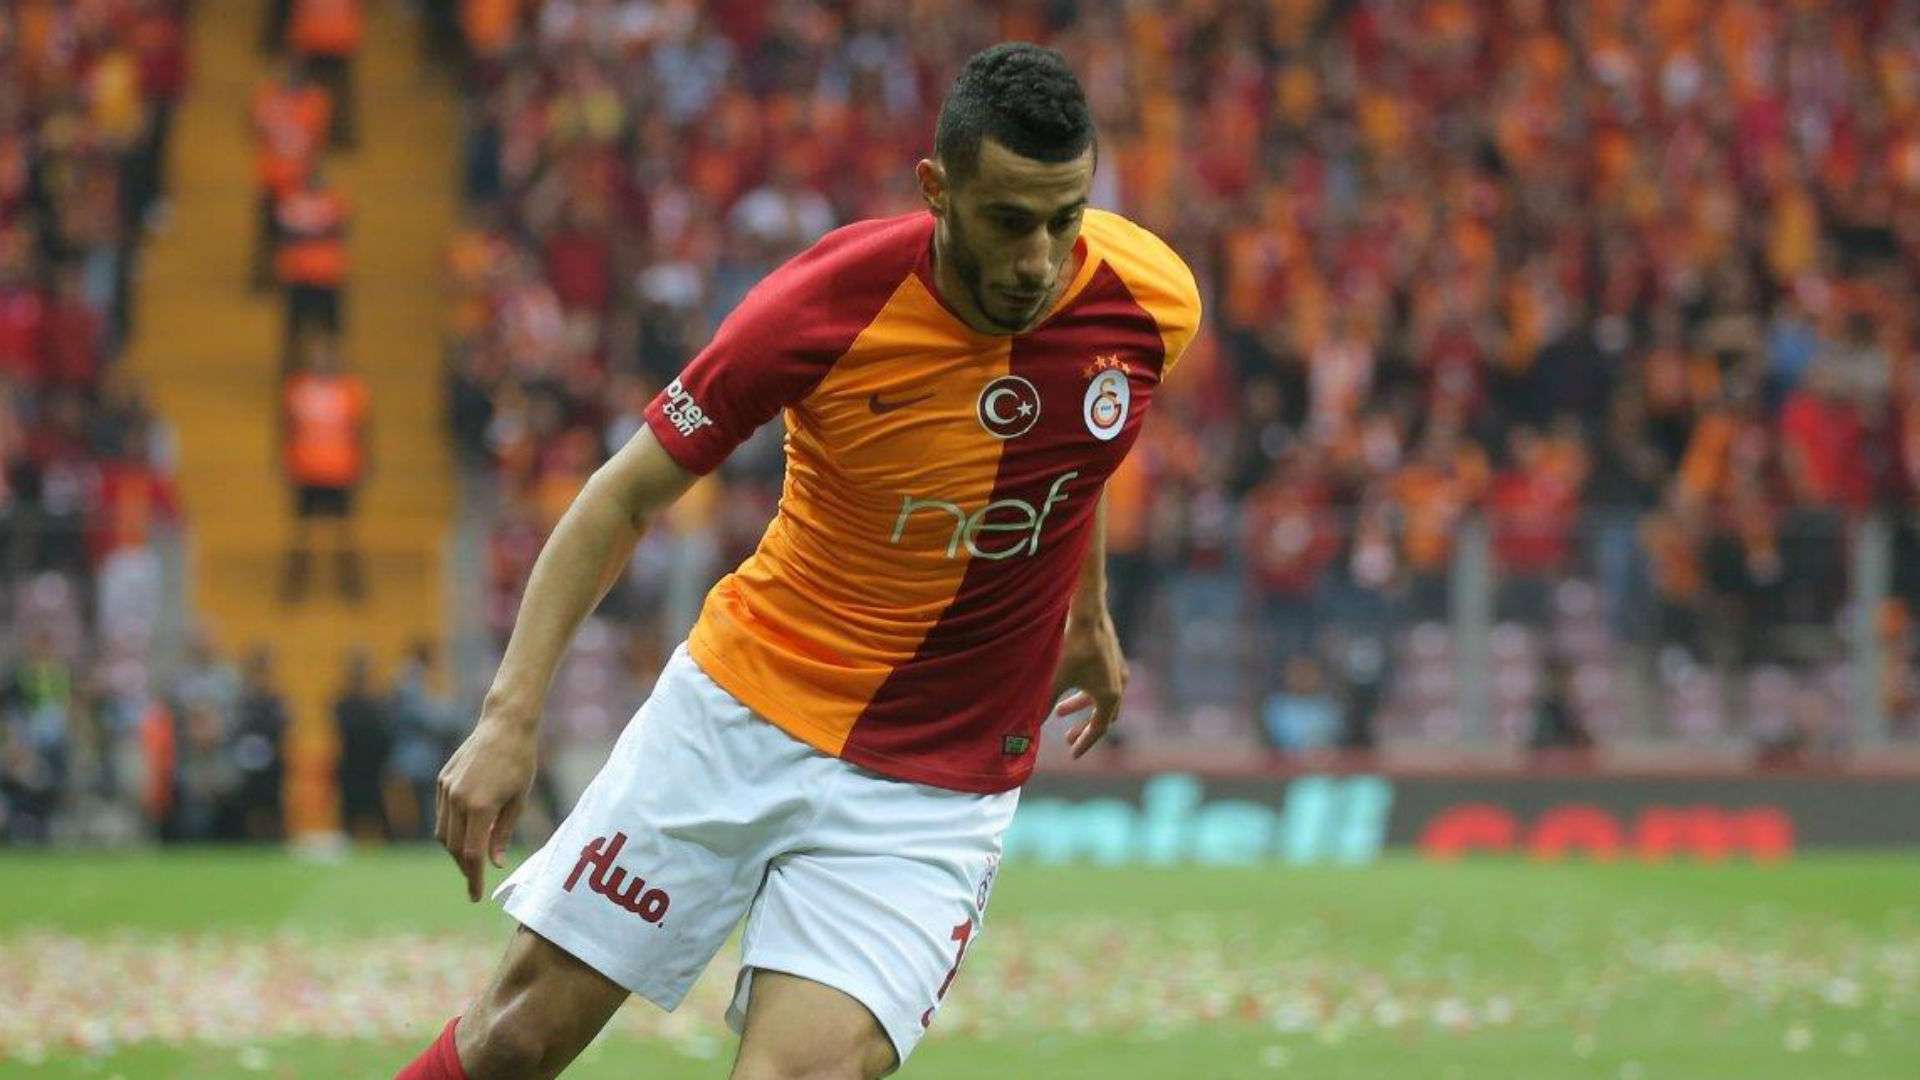 Galatasaray Besiktas Belhanda 04052019